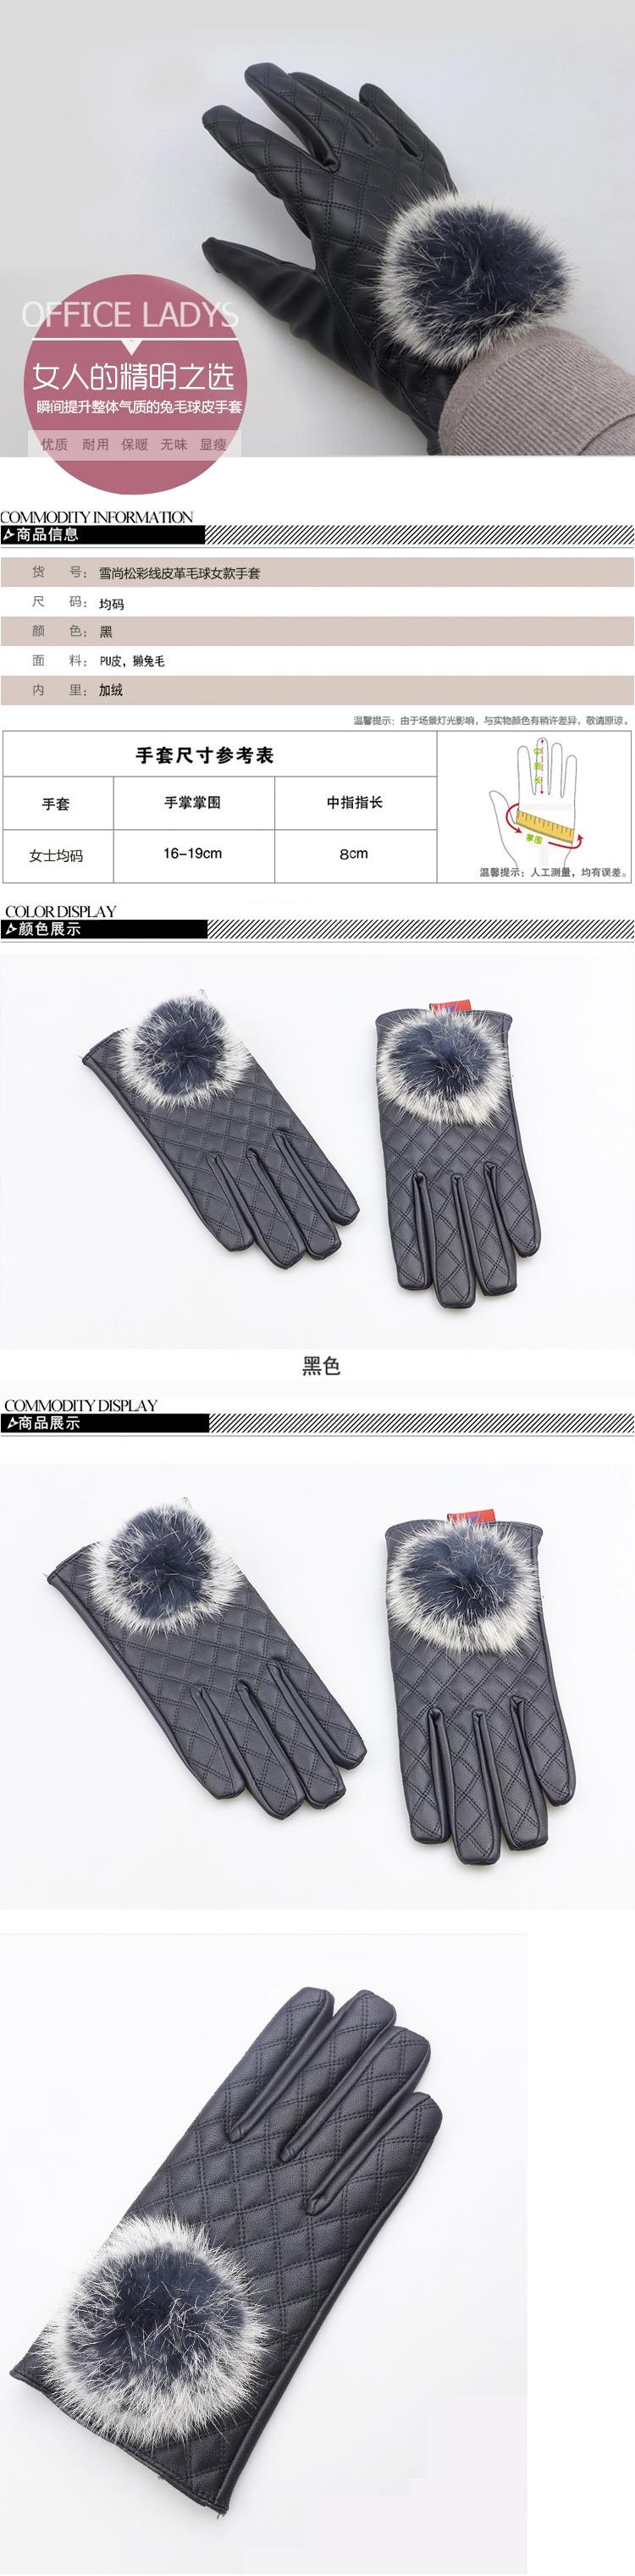 雪尚松彩线皮革毛球女款手套冬季手套保暖防风手套骑车手套